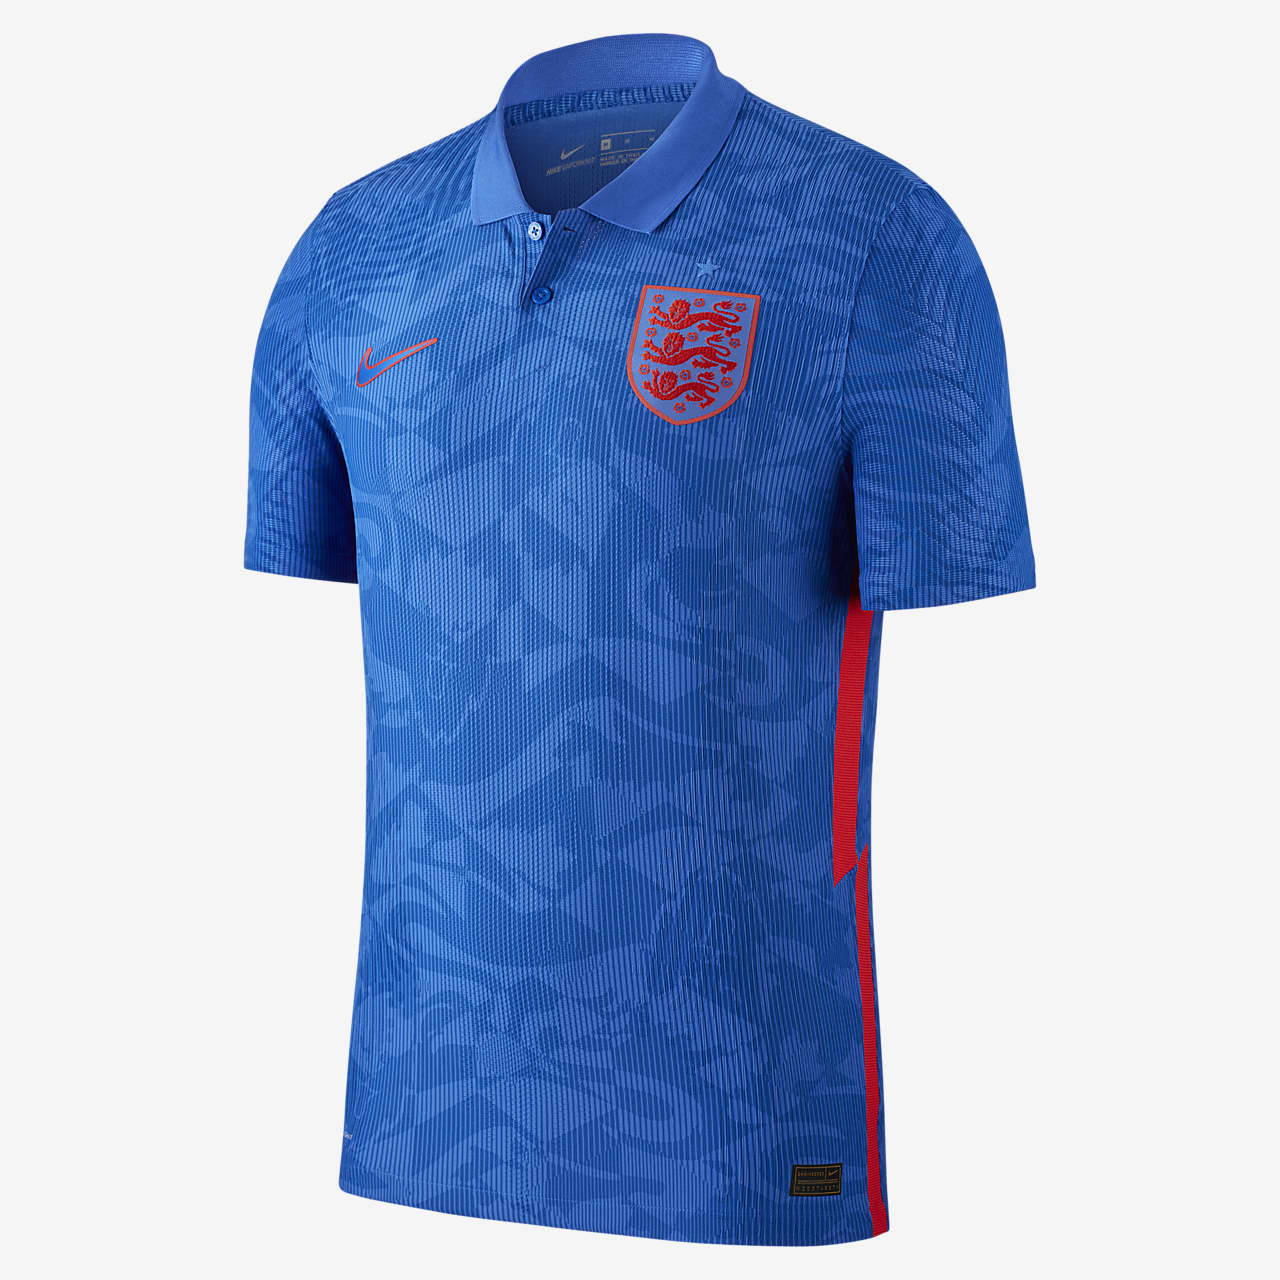 Camiseta de fútbol de visitante para hombre de Inglaterra 2020 Vapor Match.  Nike.com